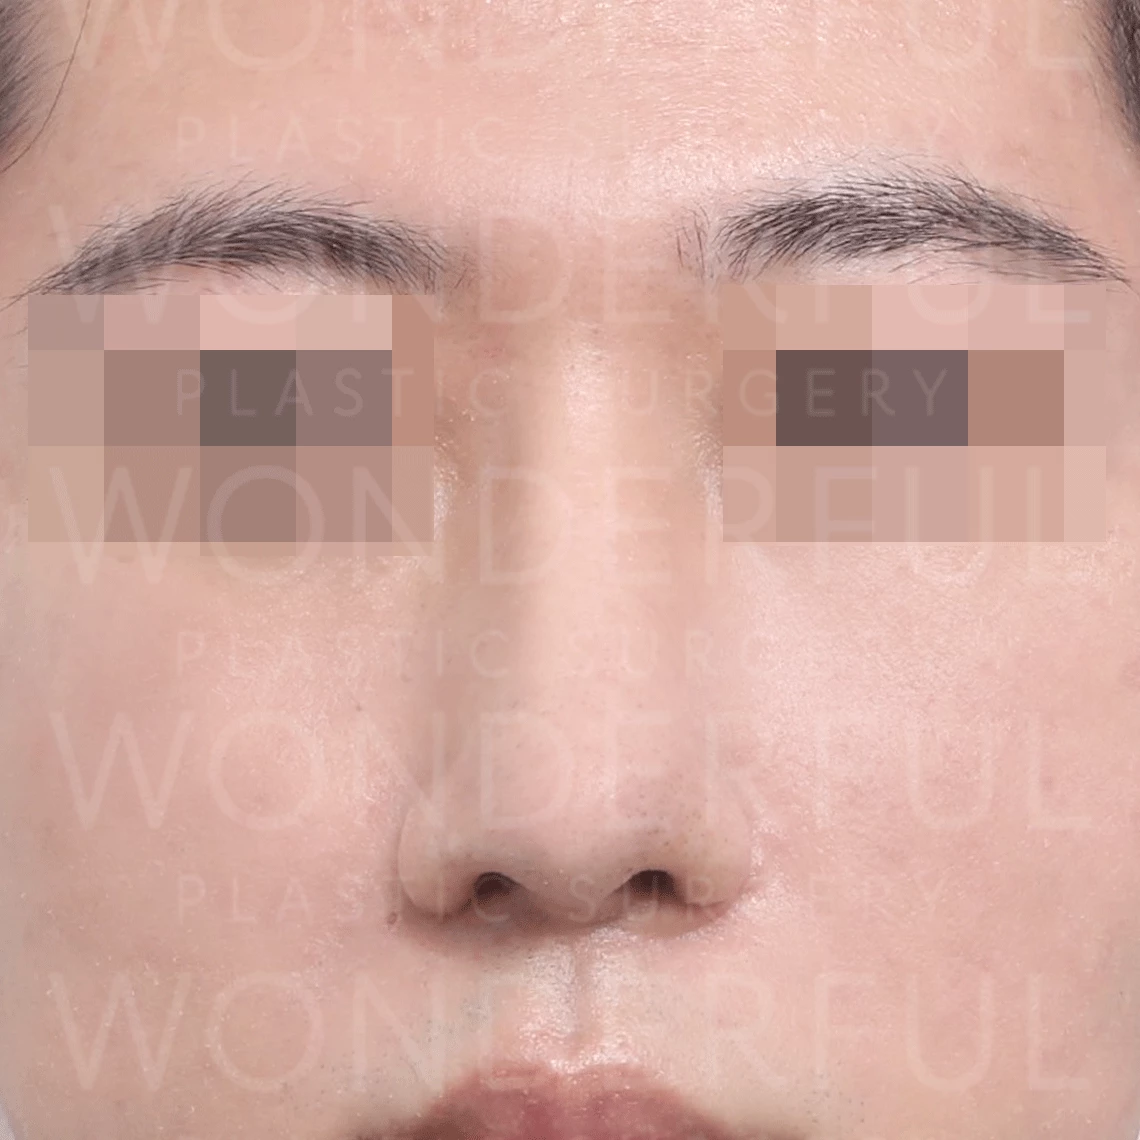 素晴らしい-整形手術-病院-韓国-広い鼻-鼻整形-ビフォーアフター結果-アフター1